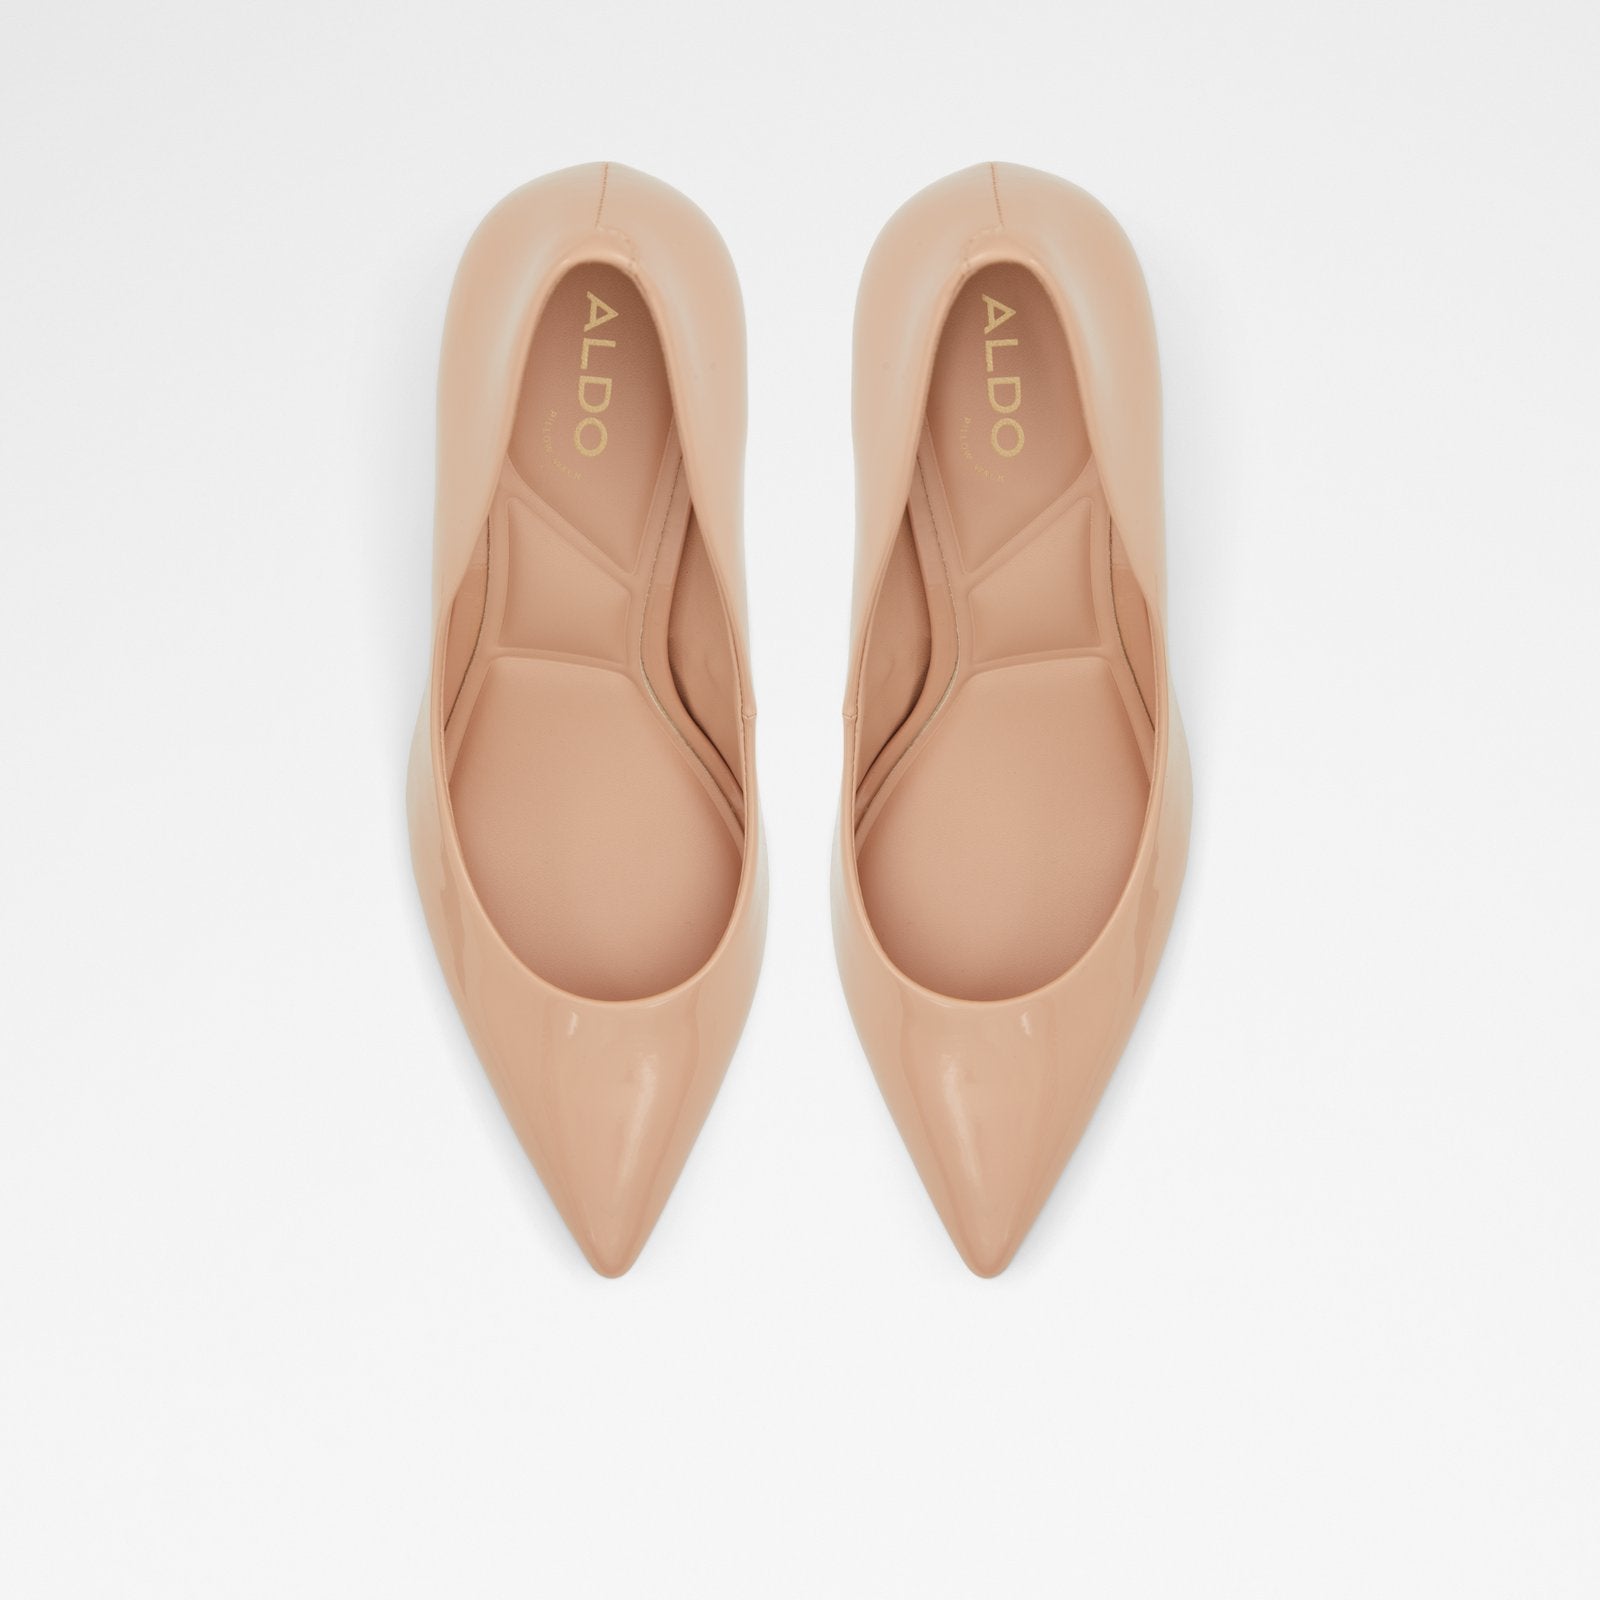 Stessymid/Heeled Women Shoes - Beige Overflow - ALDO KSA